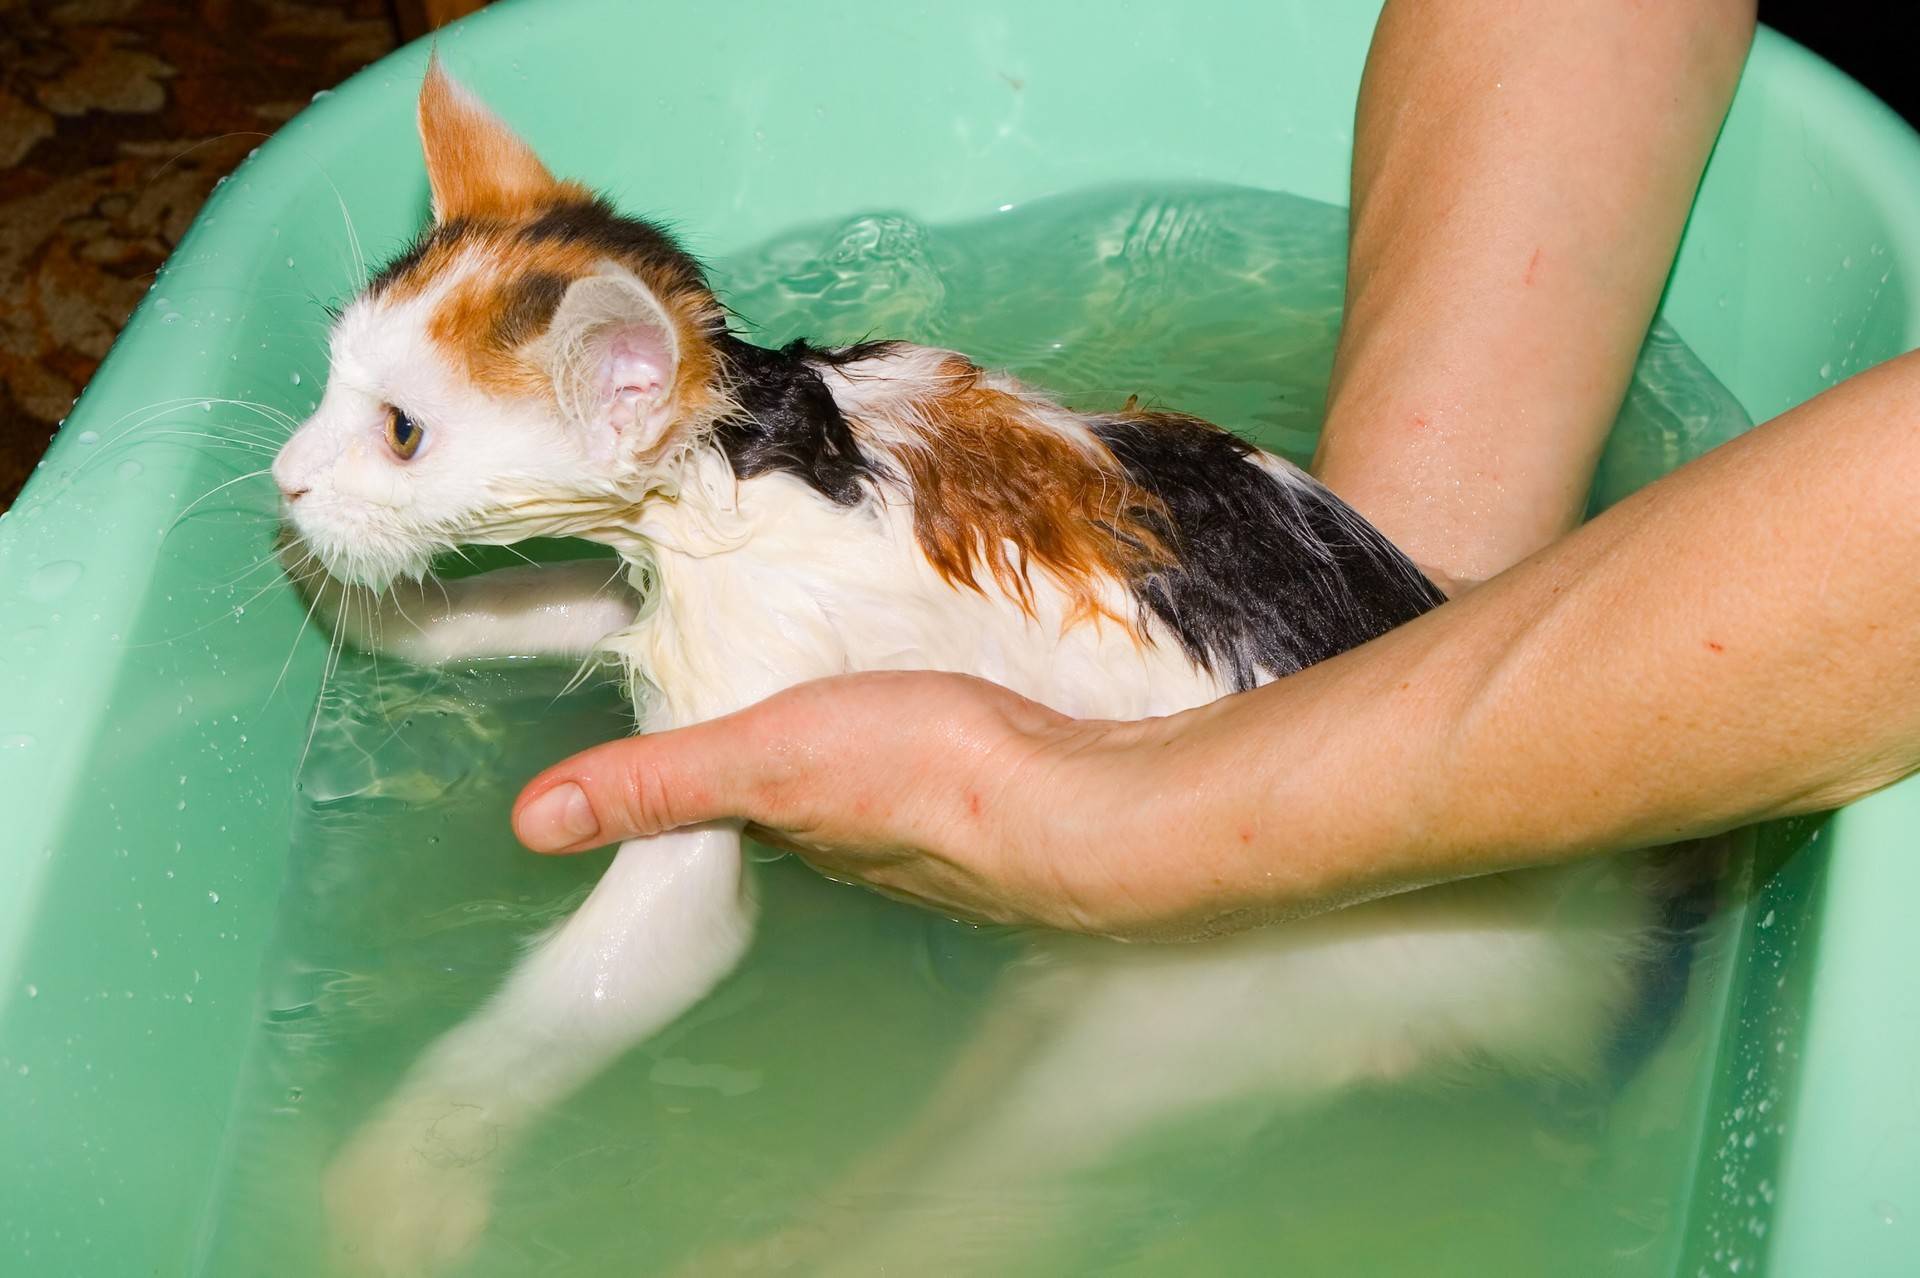 Можно ли мыть кошку обычным шампунем для людей, если нет специального?